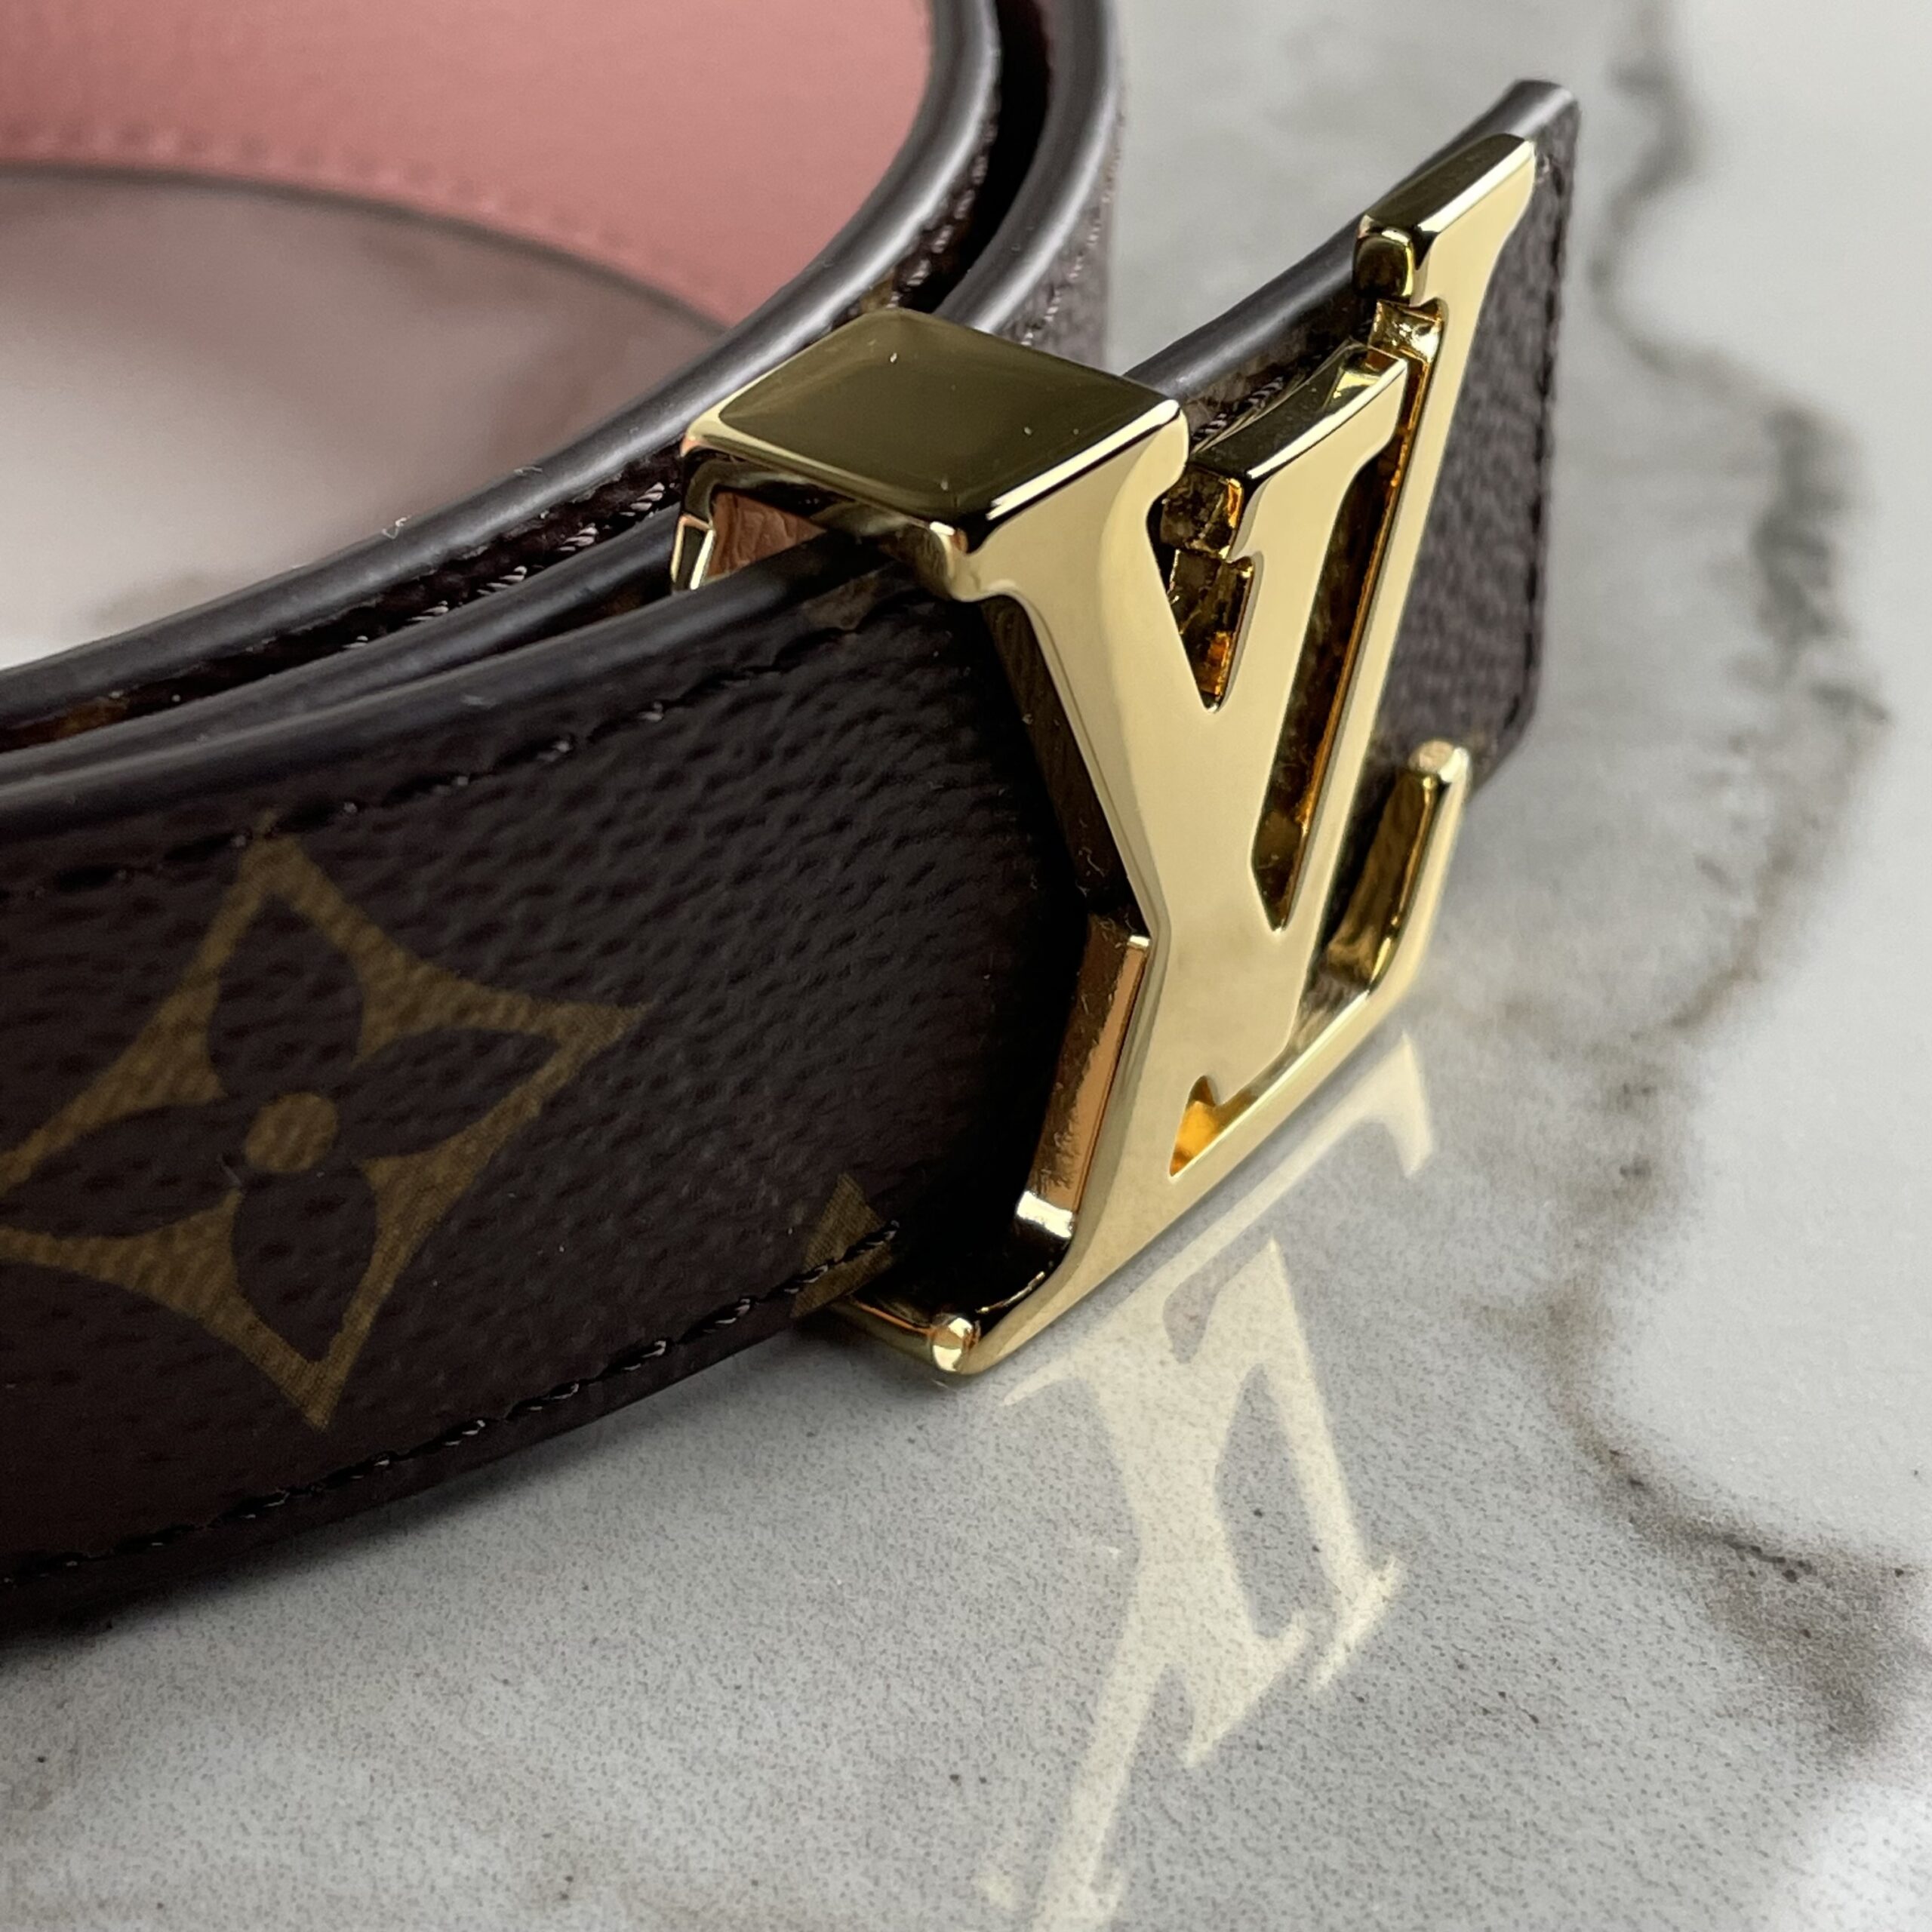 Louis Vuitton Monogram Eclipse LV Initiales Reversible Belt 85CM